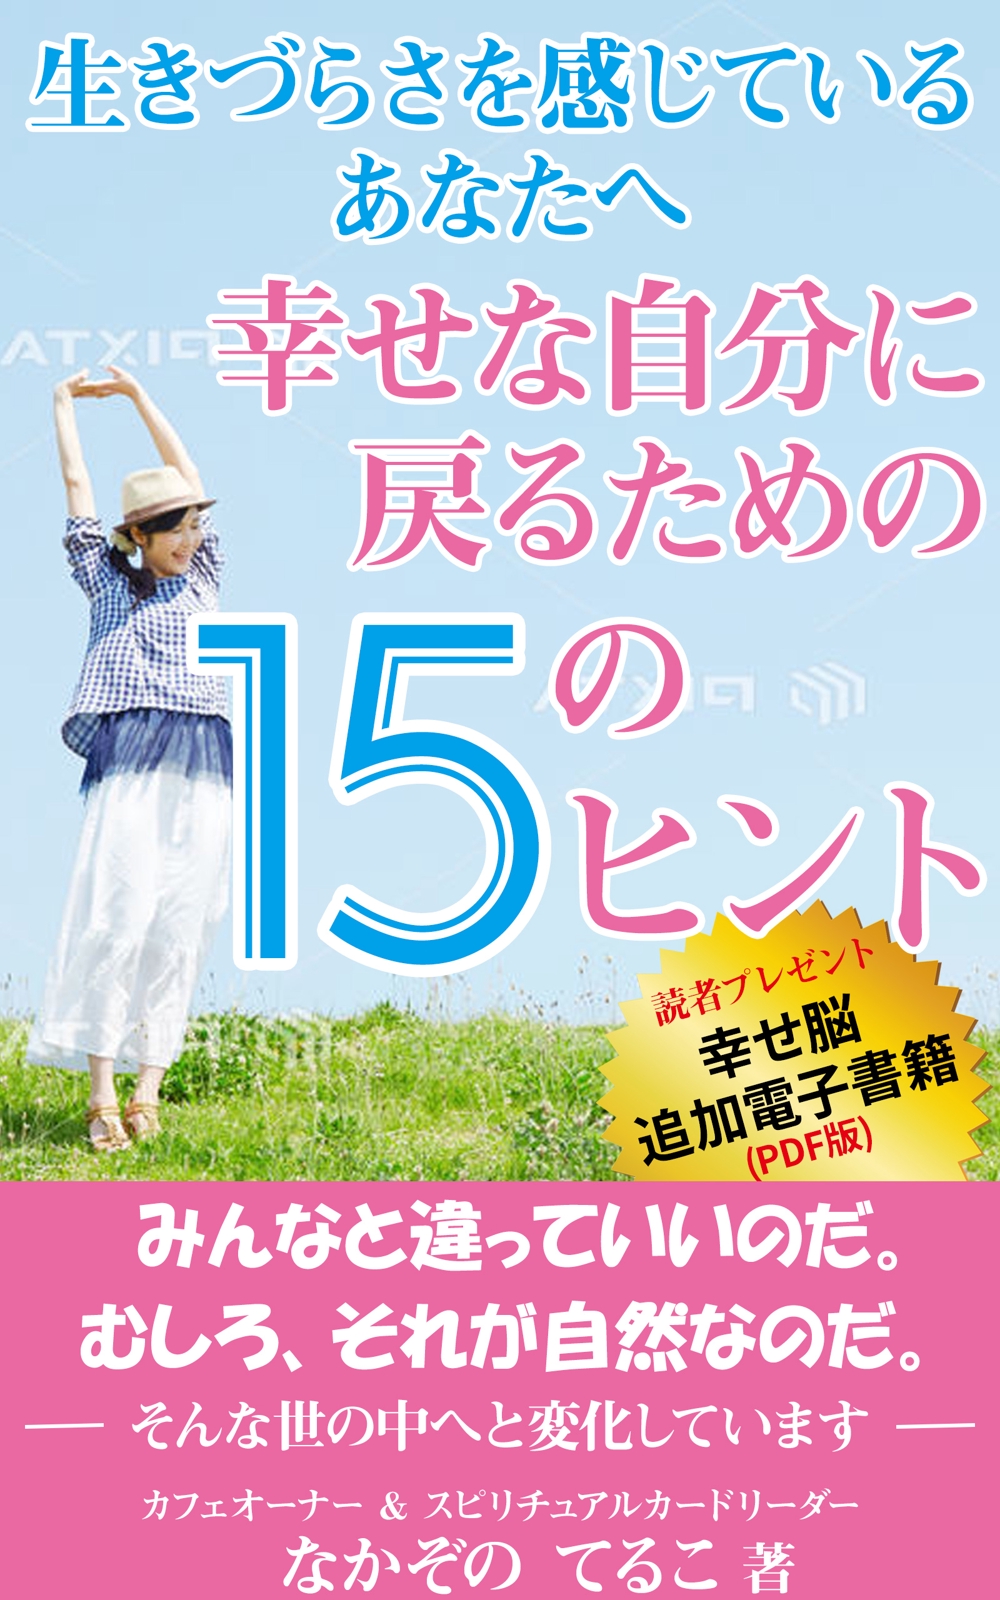 Book-Spineko-1600x2560-D.jpg